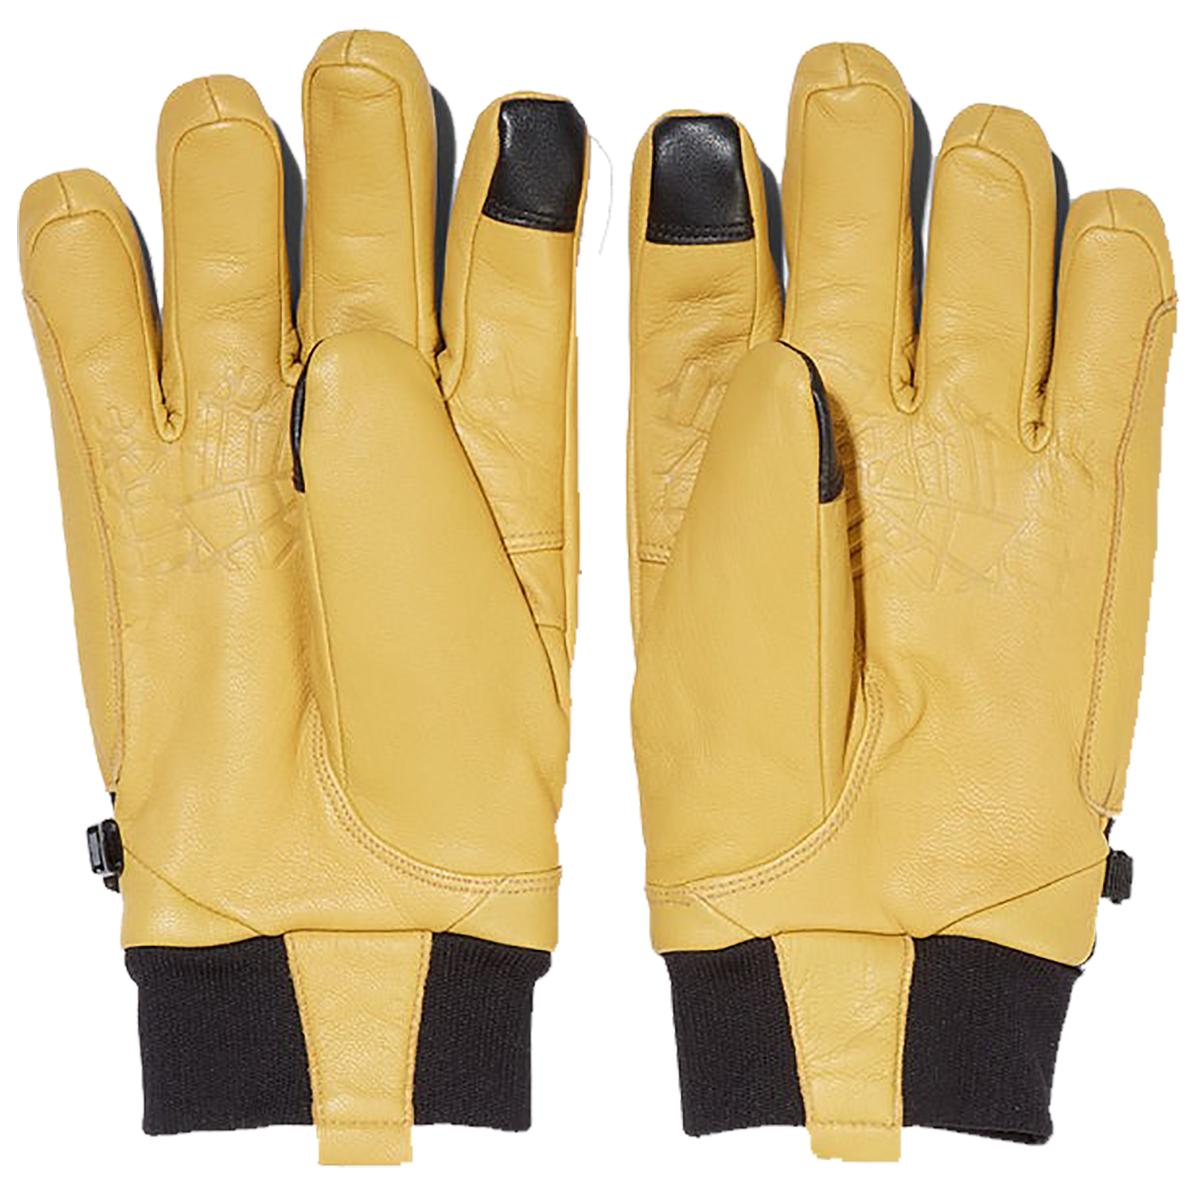 Spyder Work Glove - Men's